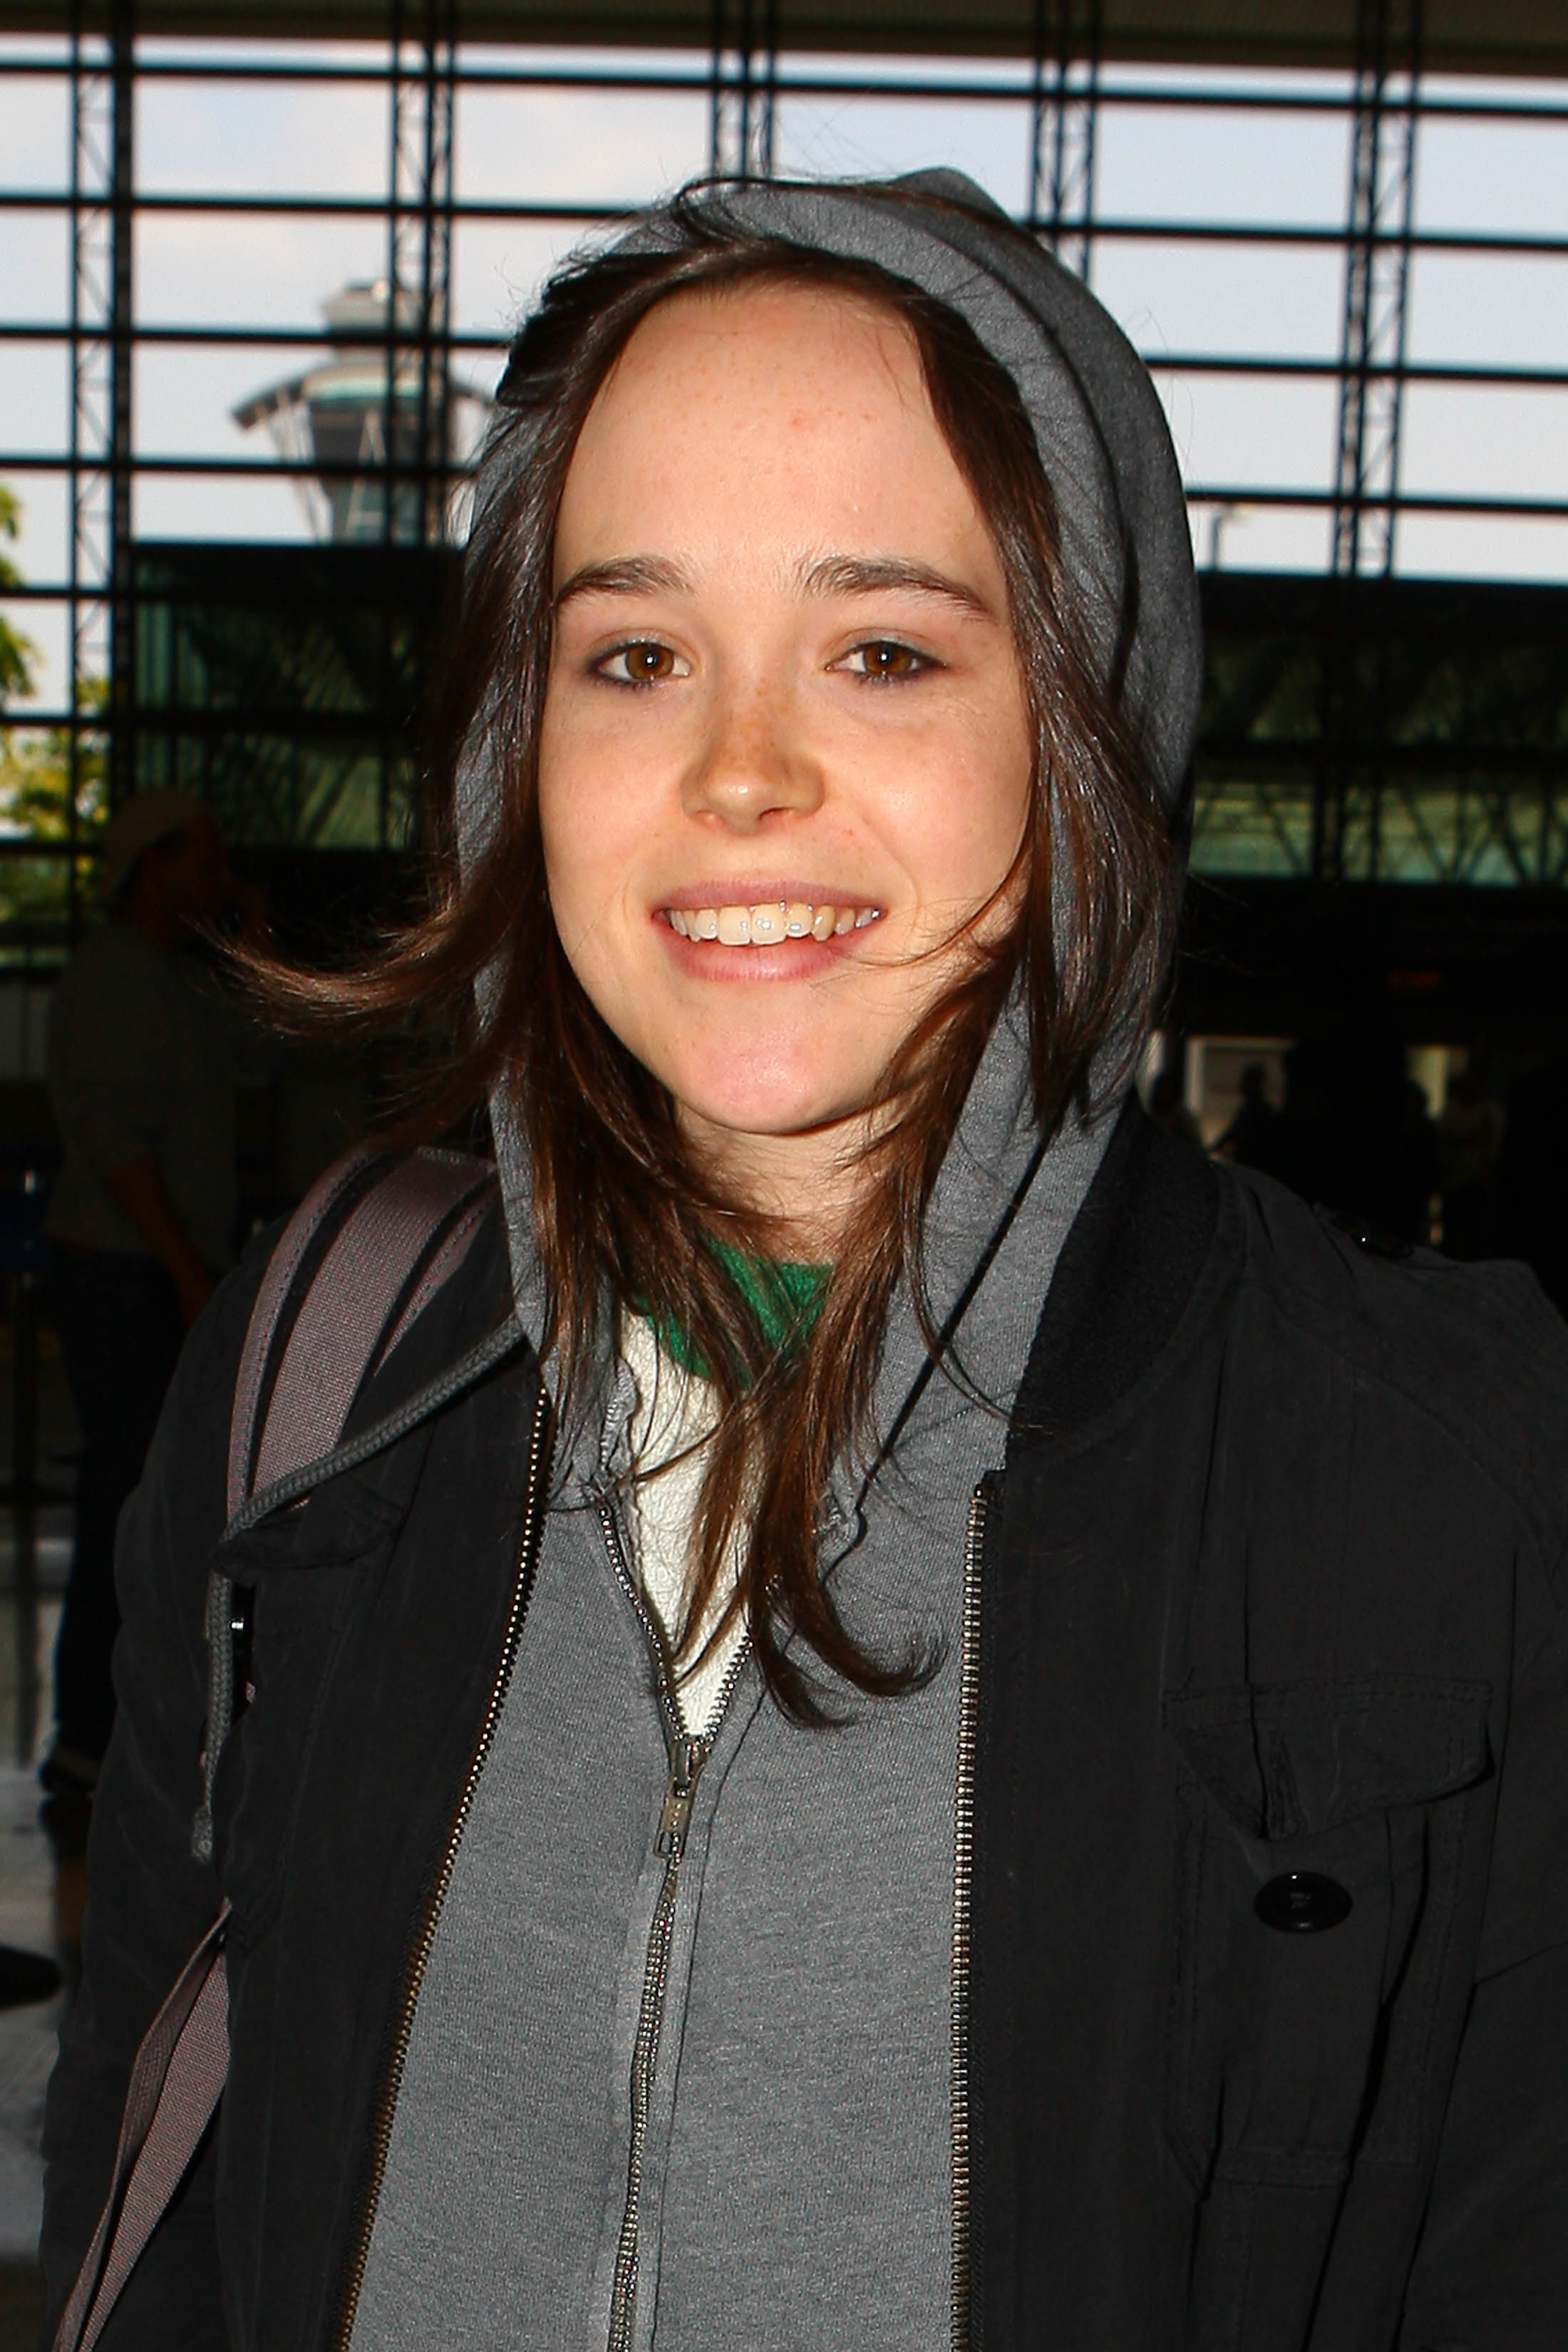 brunettes, women, Ellen Page, actress, smiling, hoodies - desktop wallpaper